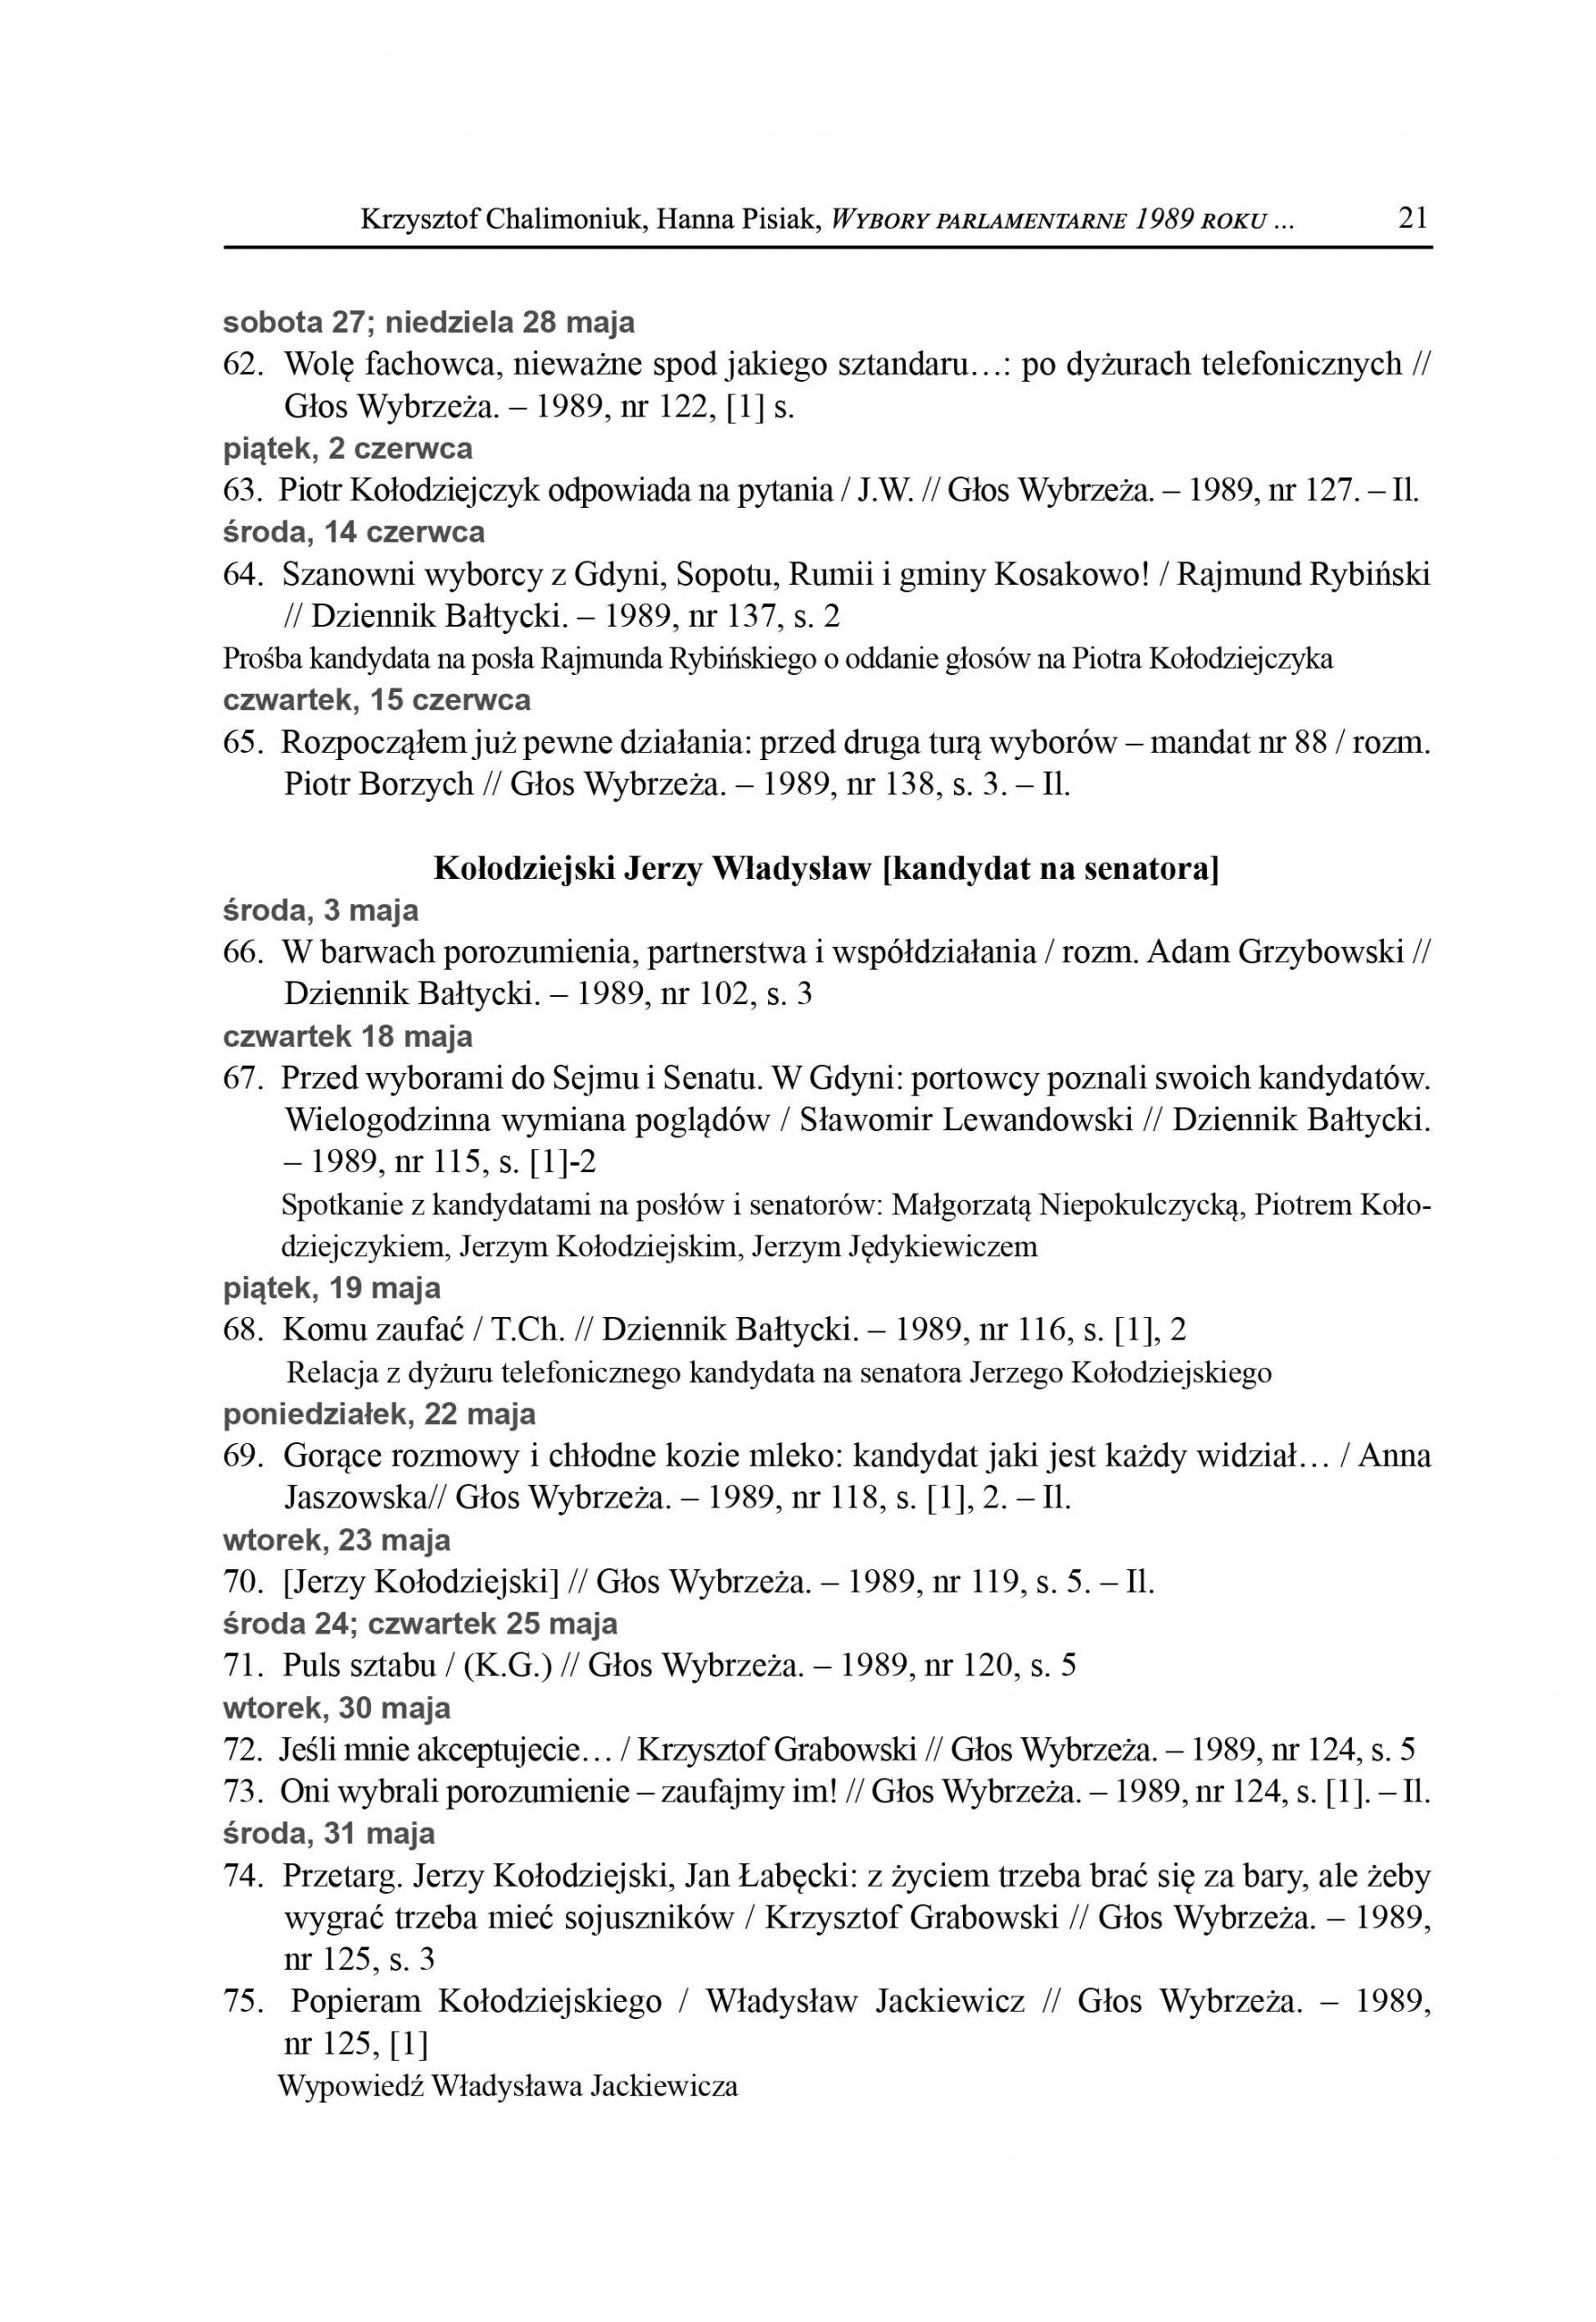 Wybory parlamentarne 1989 roku w prasie trójmiejskiej: zestawienie bibliograficzne artykułów (opracowanie w wyborze)